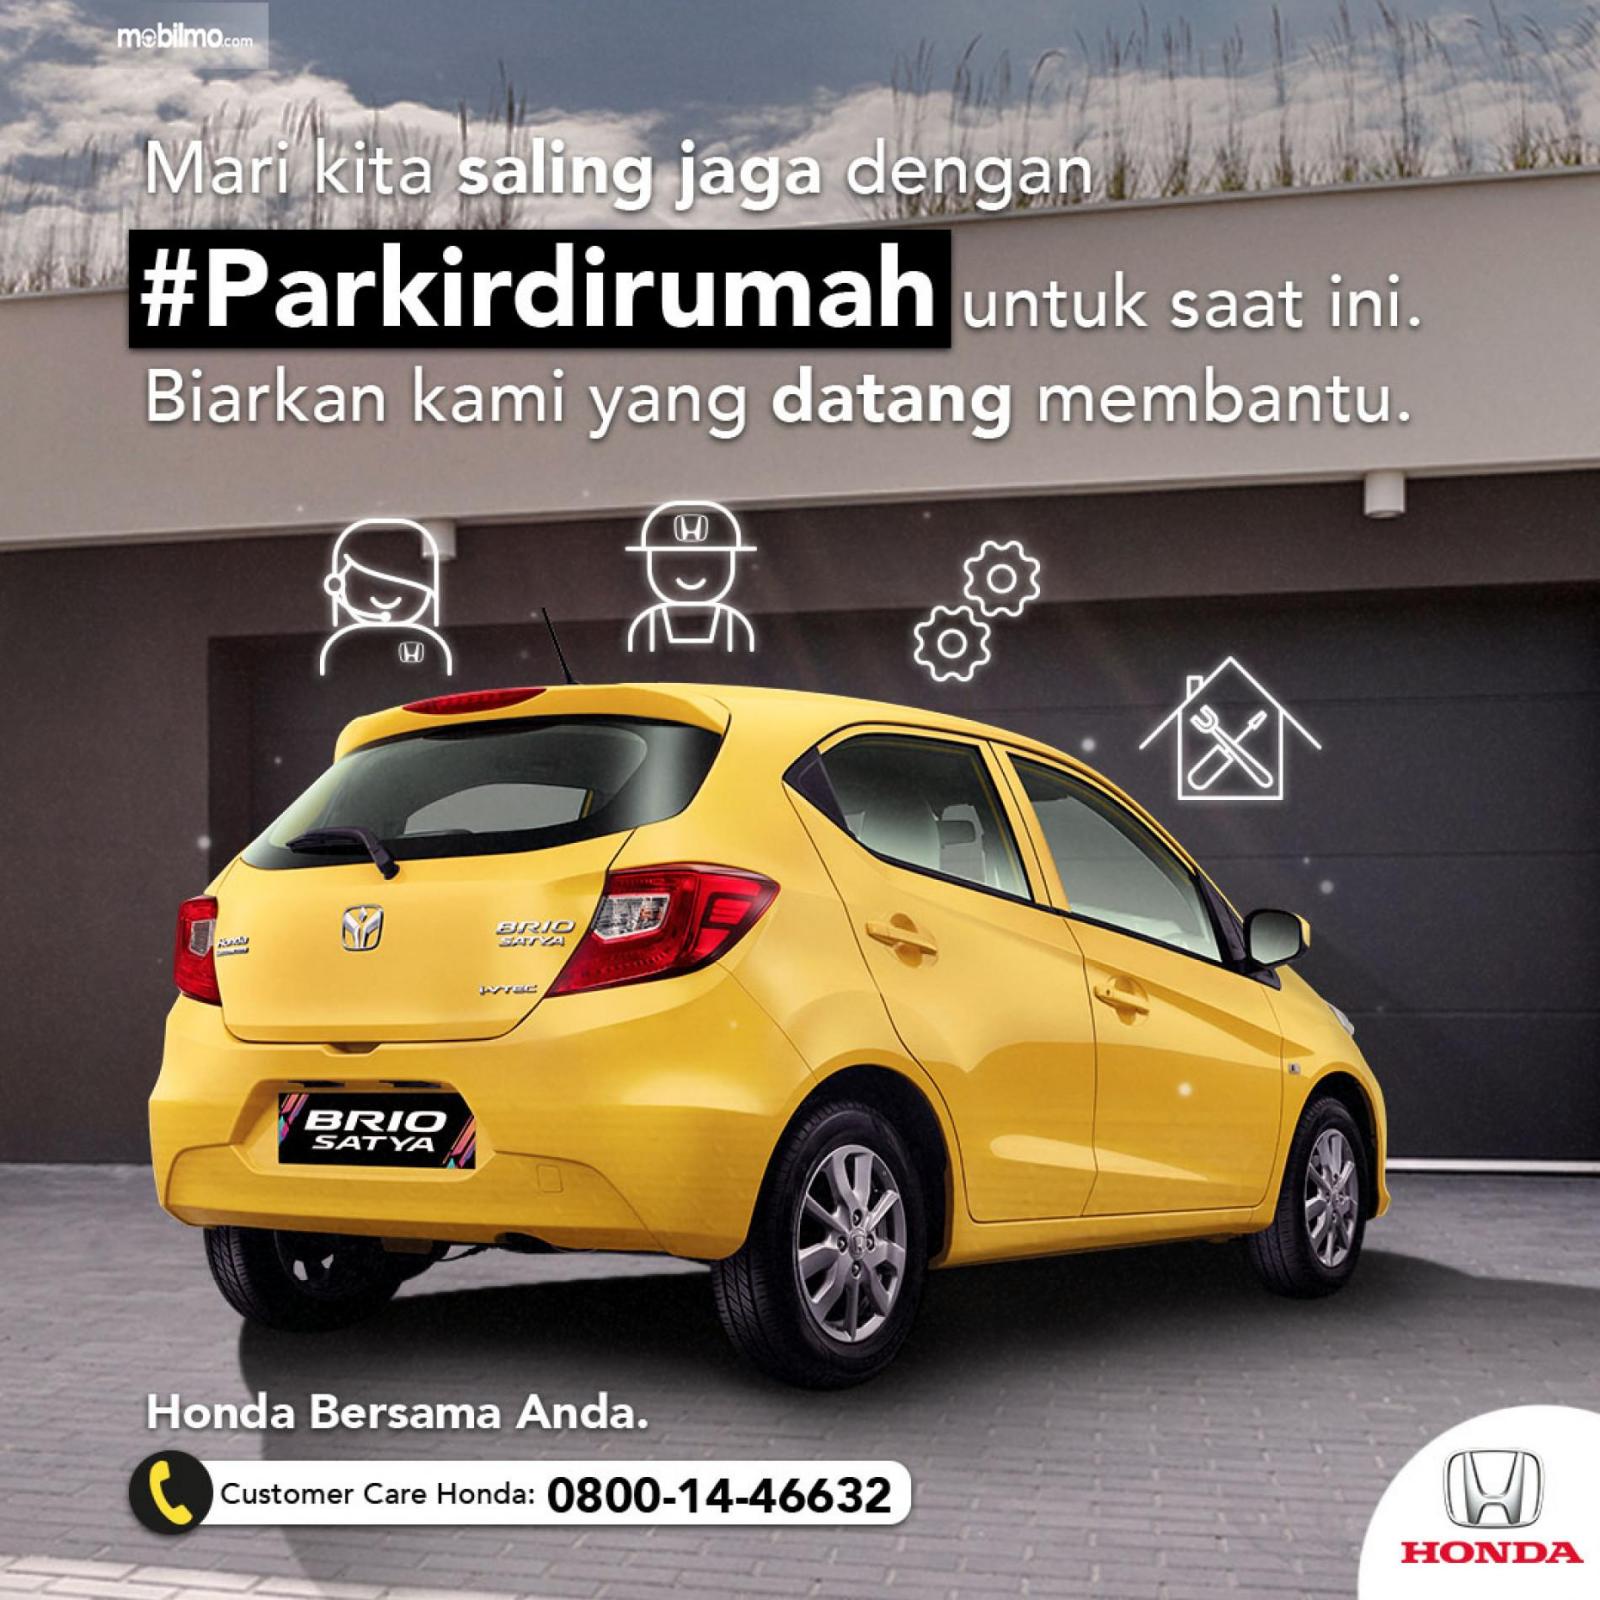 Gambar menunjukkan kampanye Honda #Parkirdirumah